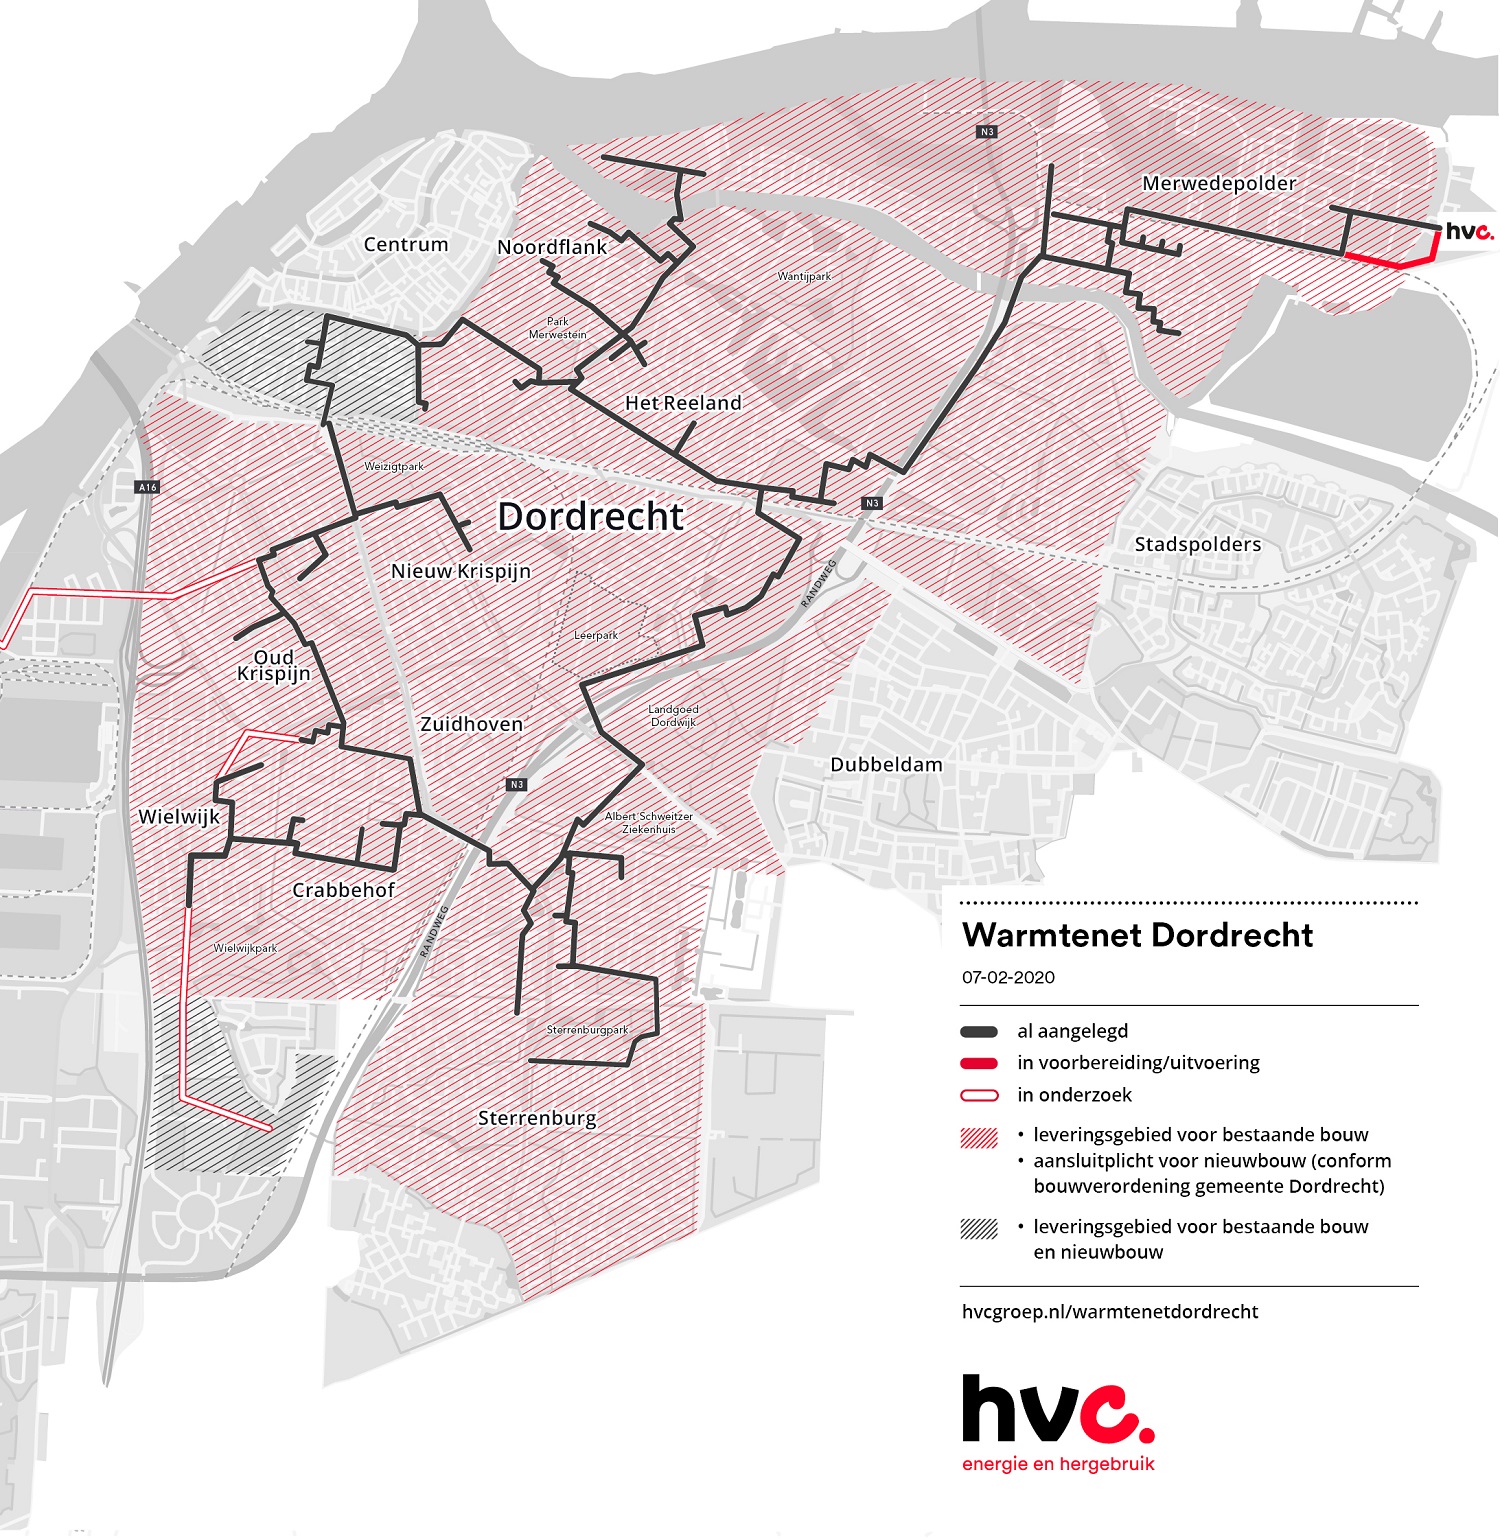 Op deze plattegrond van Dordrecht is te zien waar de hoofdleidingen van het warmtenet liggen en wat de leveringsgebieden voor warmte zijn. Deze lopen van de Merwedepolde, via de N3 naar Het Reeland, Noordflank, langs het centrum, door het Weizigtpark, Nieuw Krispijn, oud Krispijn, Wielwijk, Krabbehof en uiteindelijk Sterrenburg